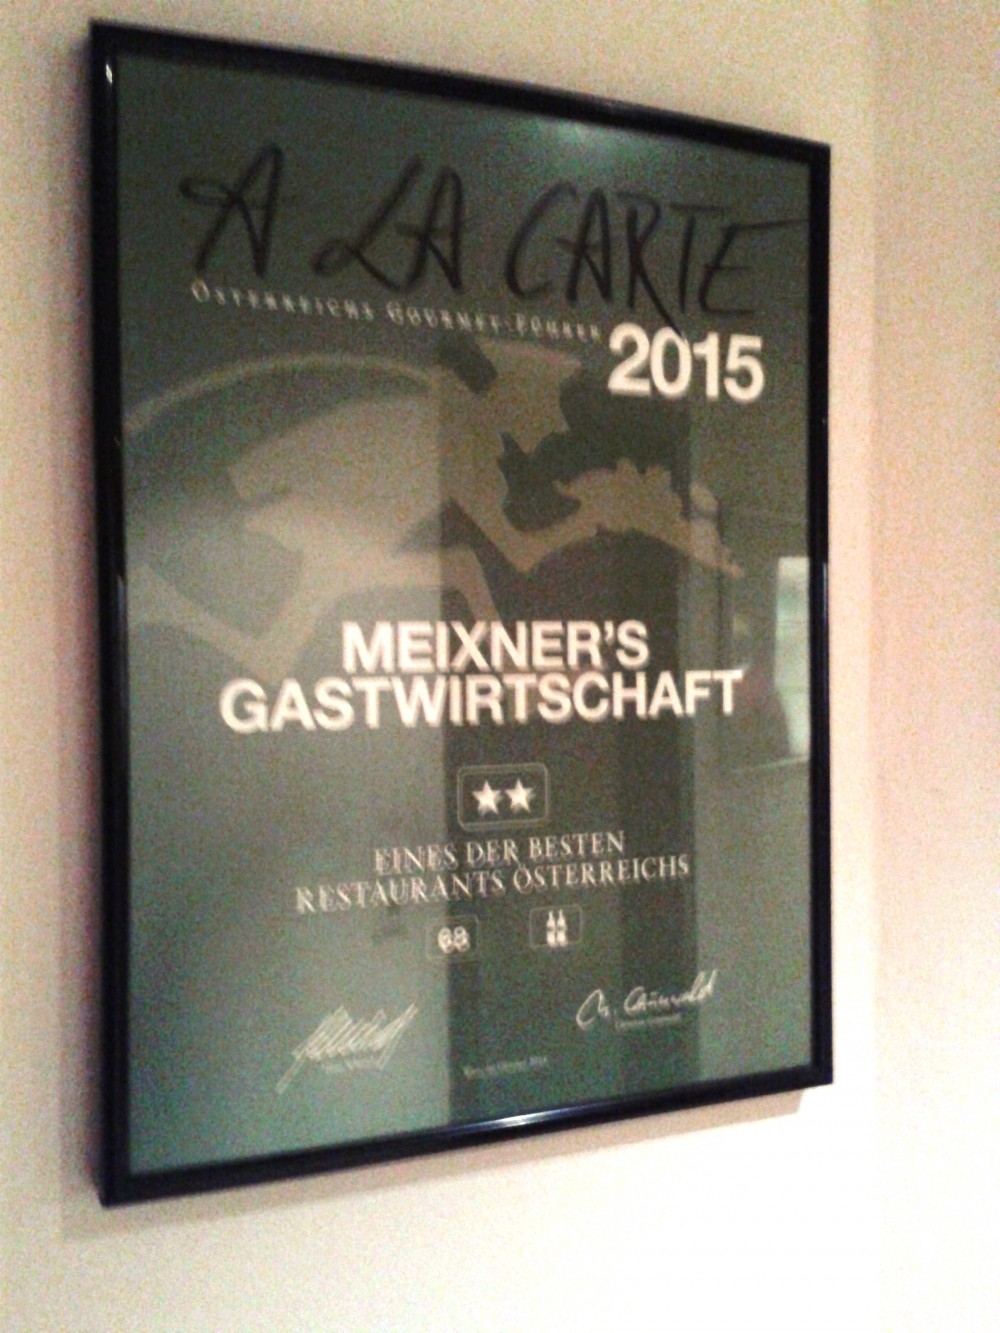 Meixner - A la Carte-Auszeichnung - Meixner's Gastwirtschaft - Wien